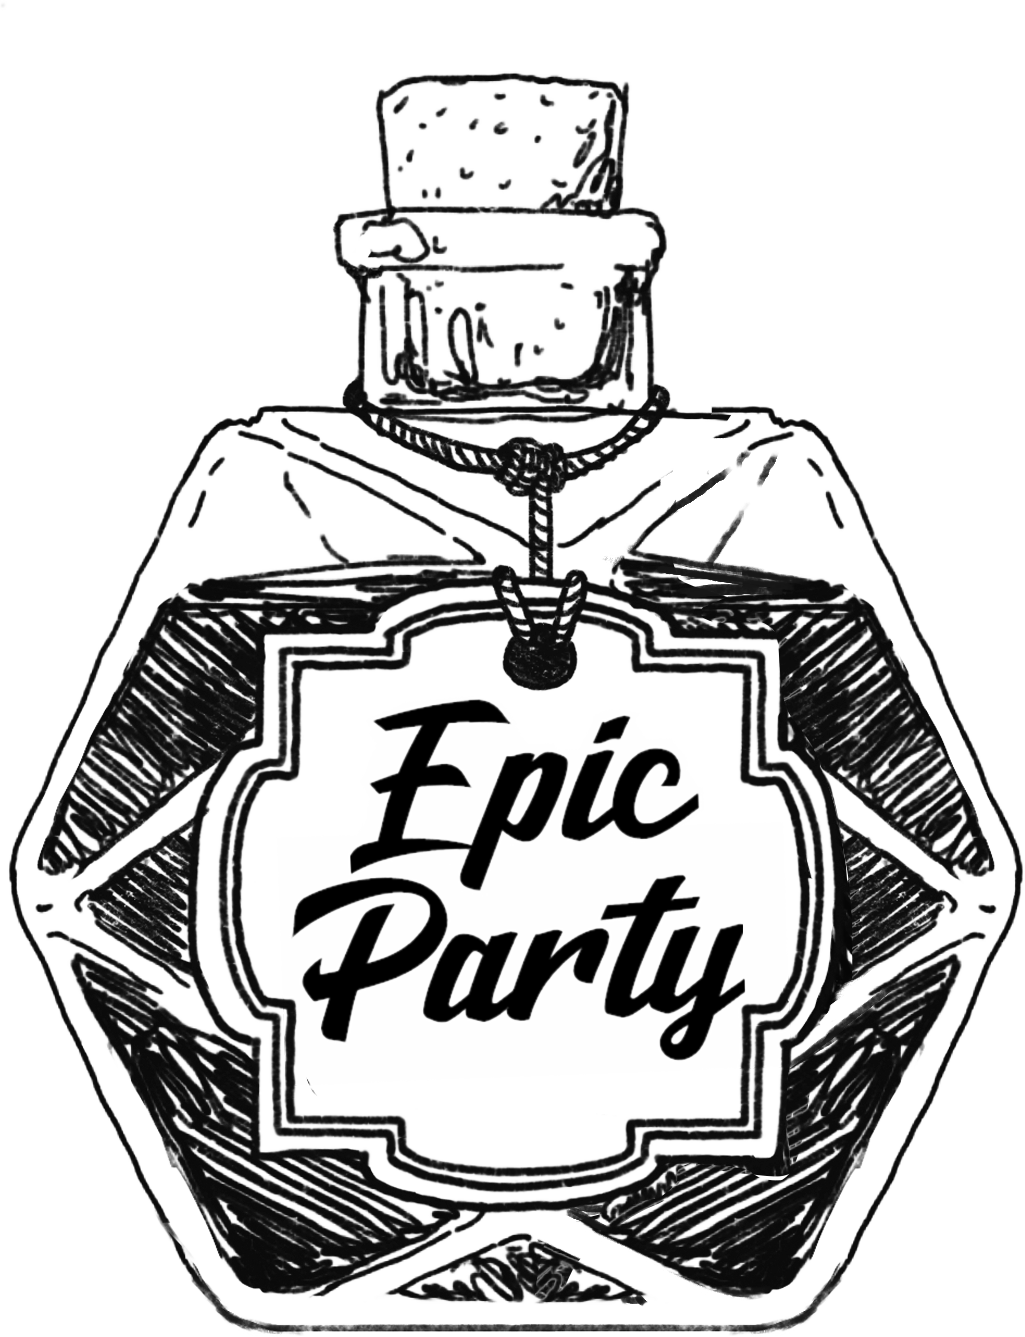 Epic Party LTD